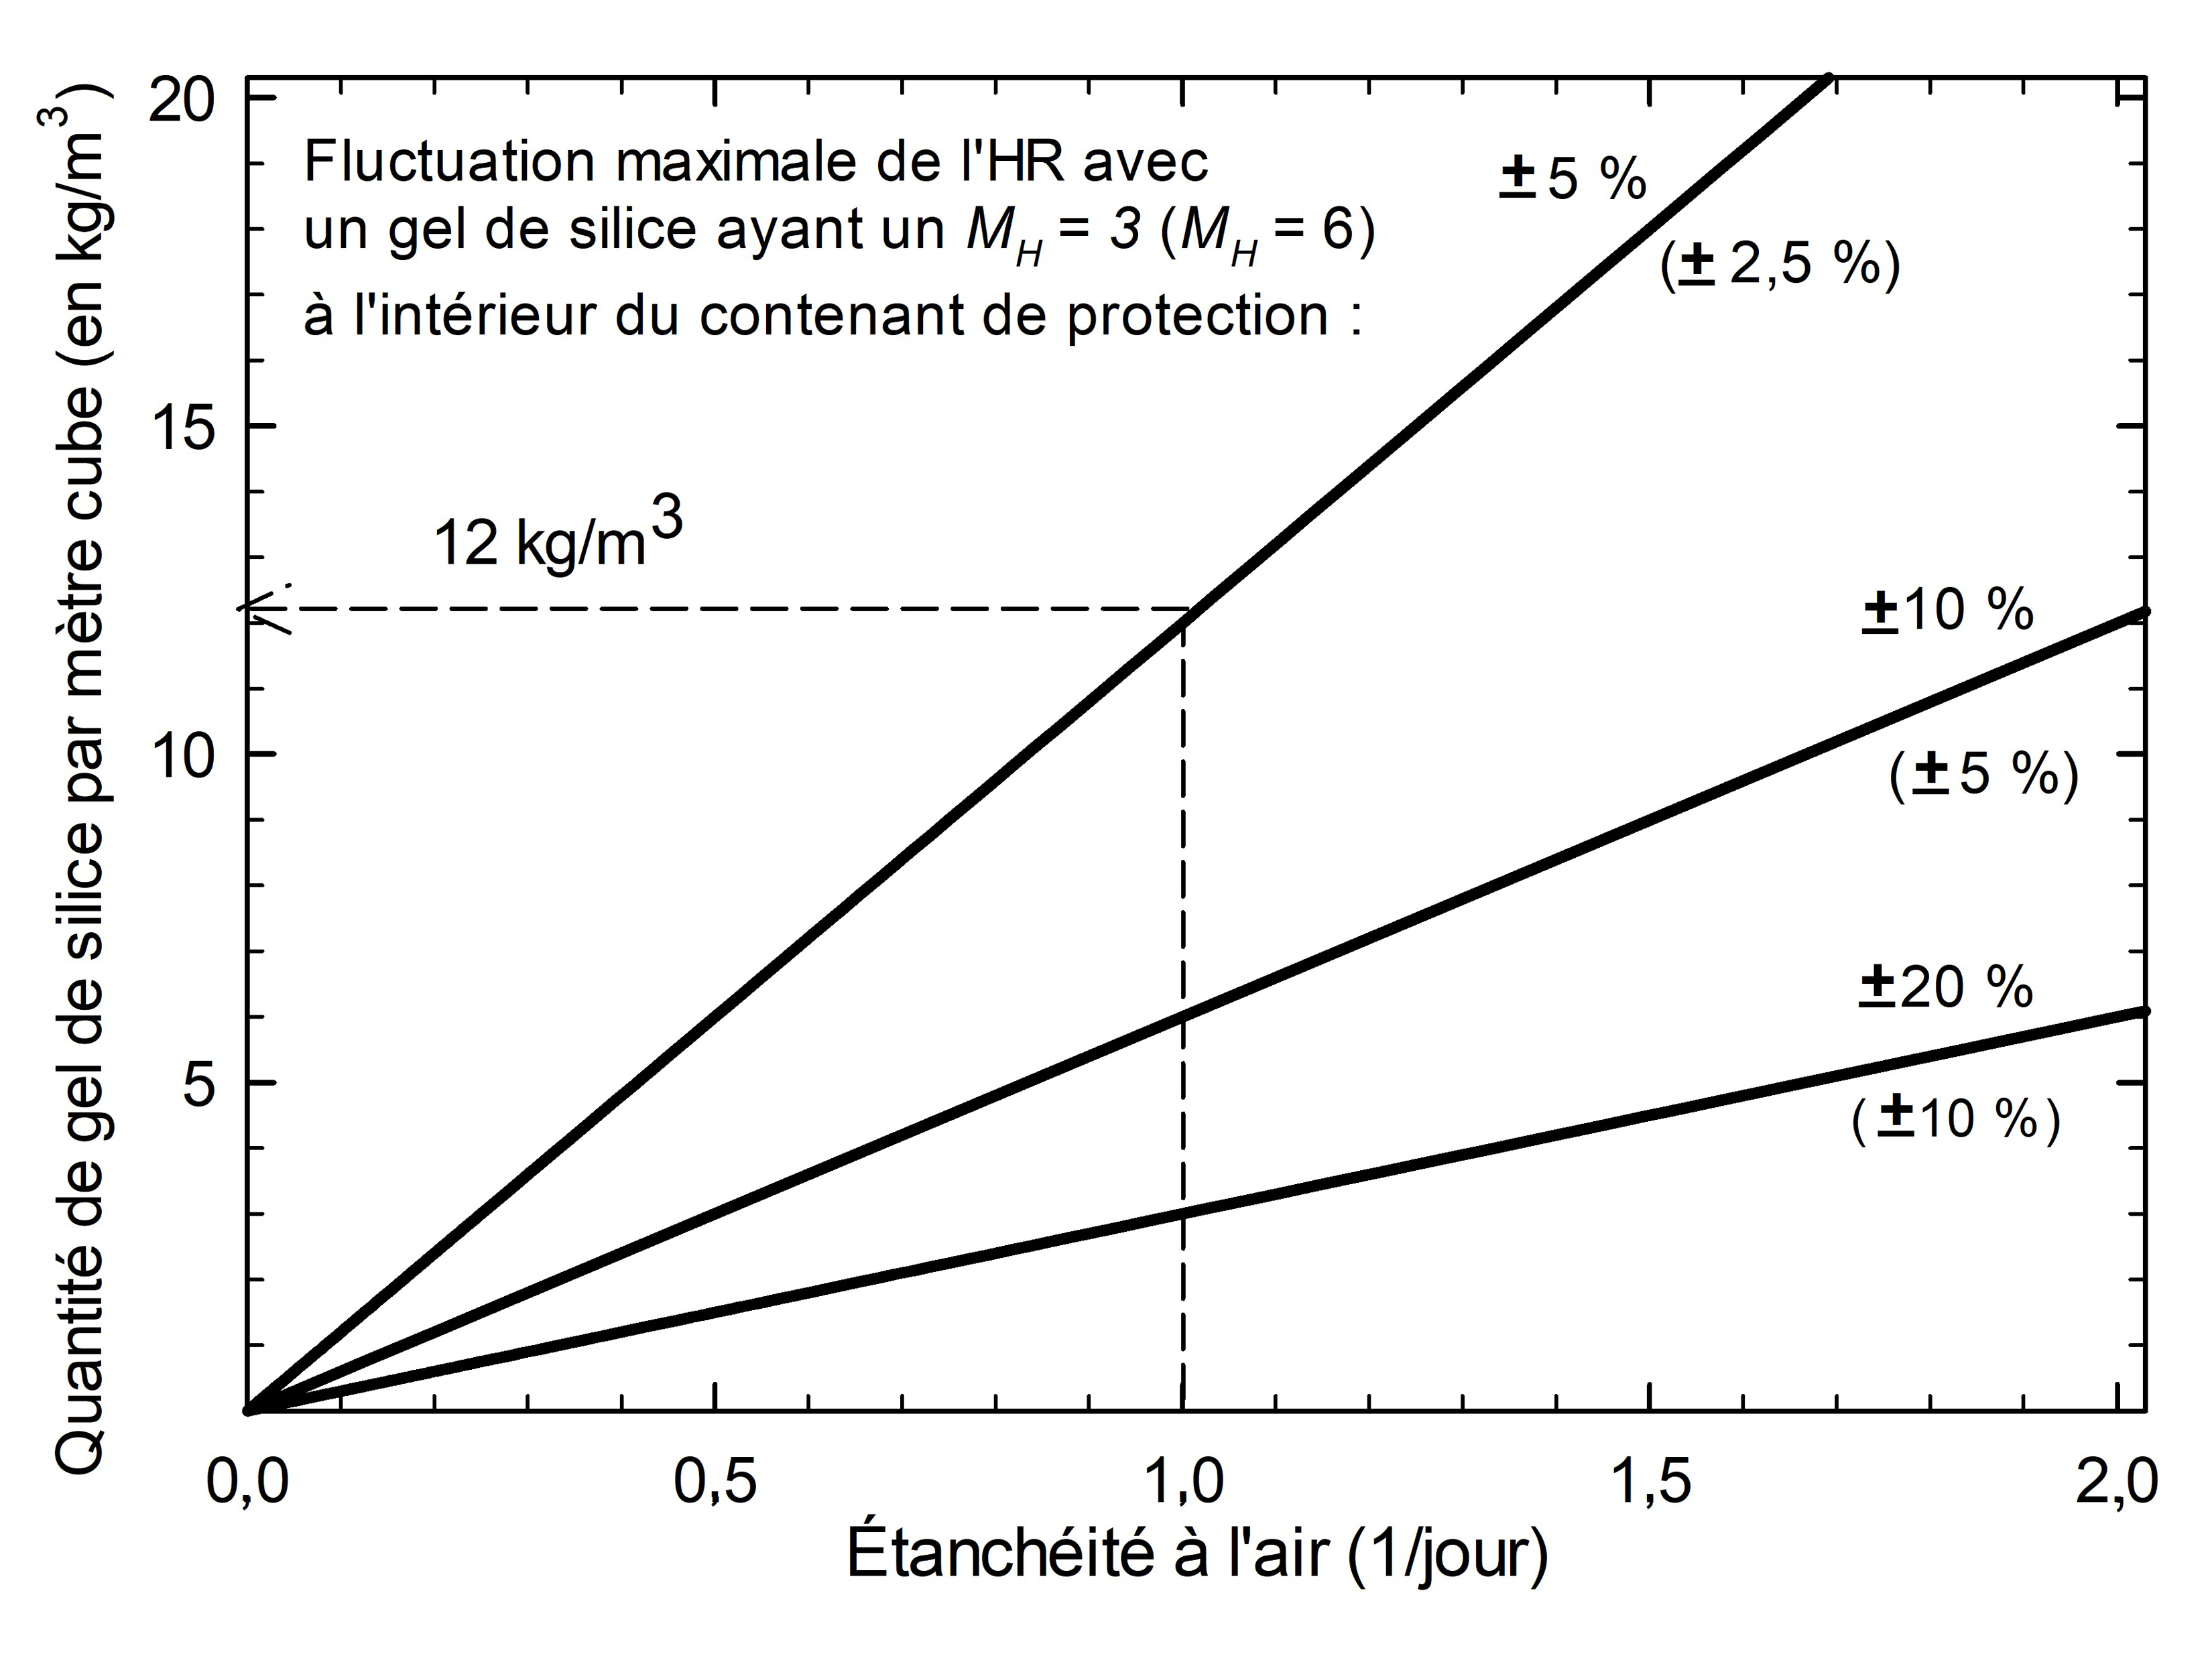 Graphique de la quantité de gel de silice requise pour maintenir des conditions stables d’HR au cours d’un cycle annuel selon l’équation 1